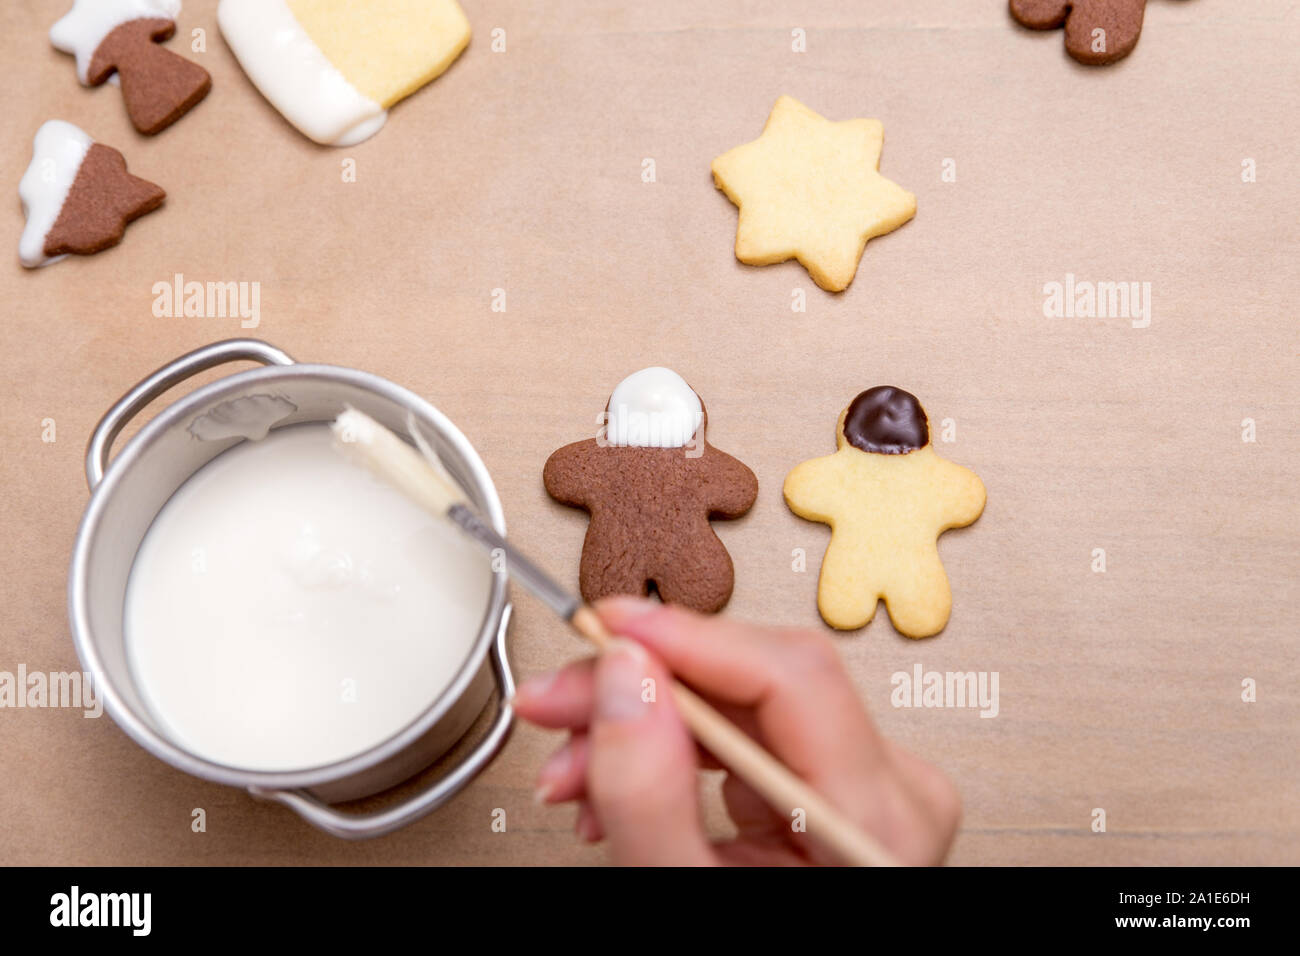 Femme est brun et blanc décoration cookies au chocolat blanc, concept boulangerie sucré Banque D'Images